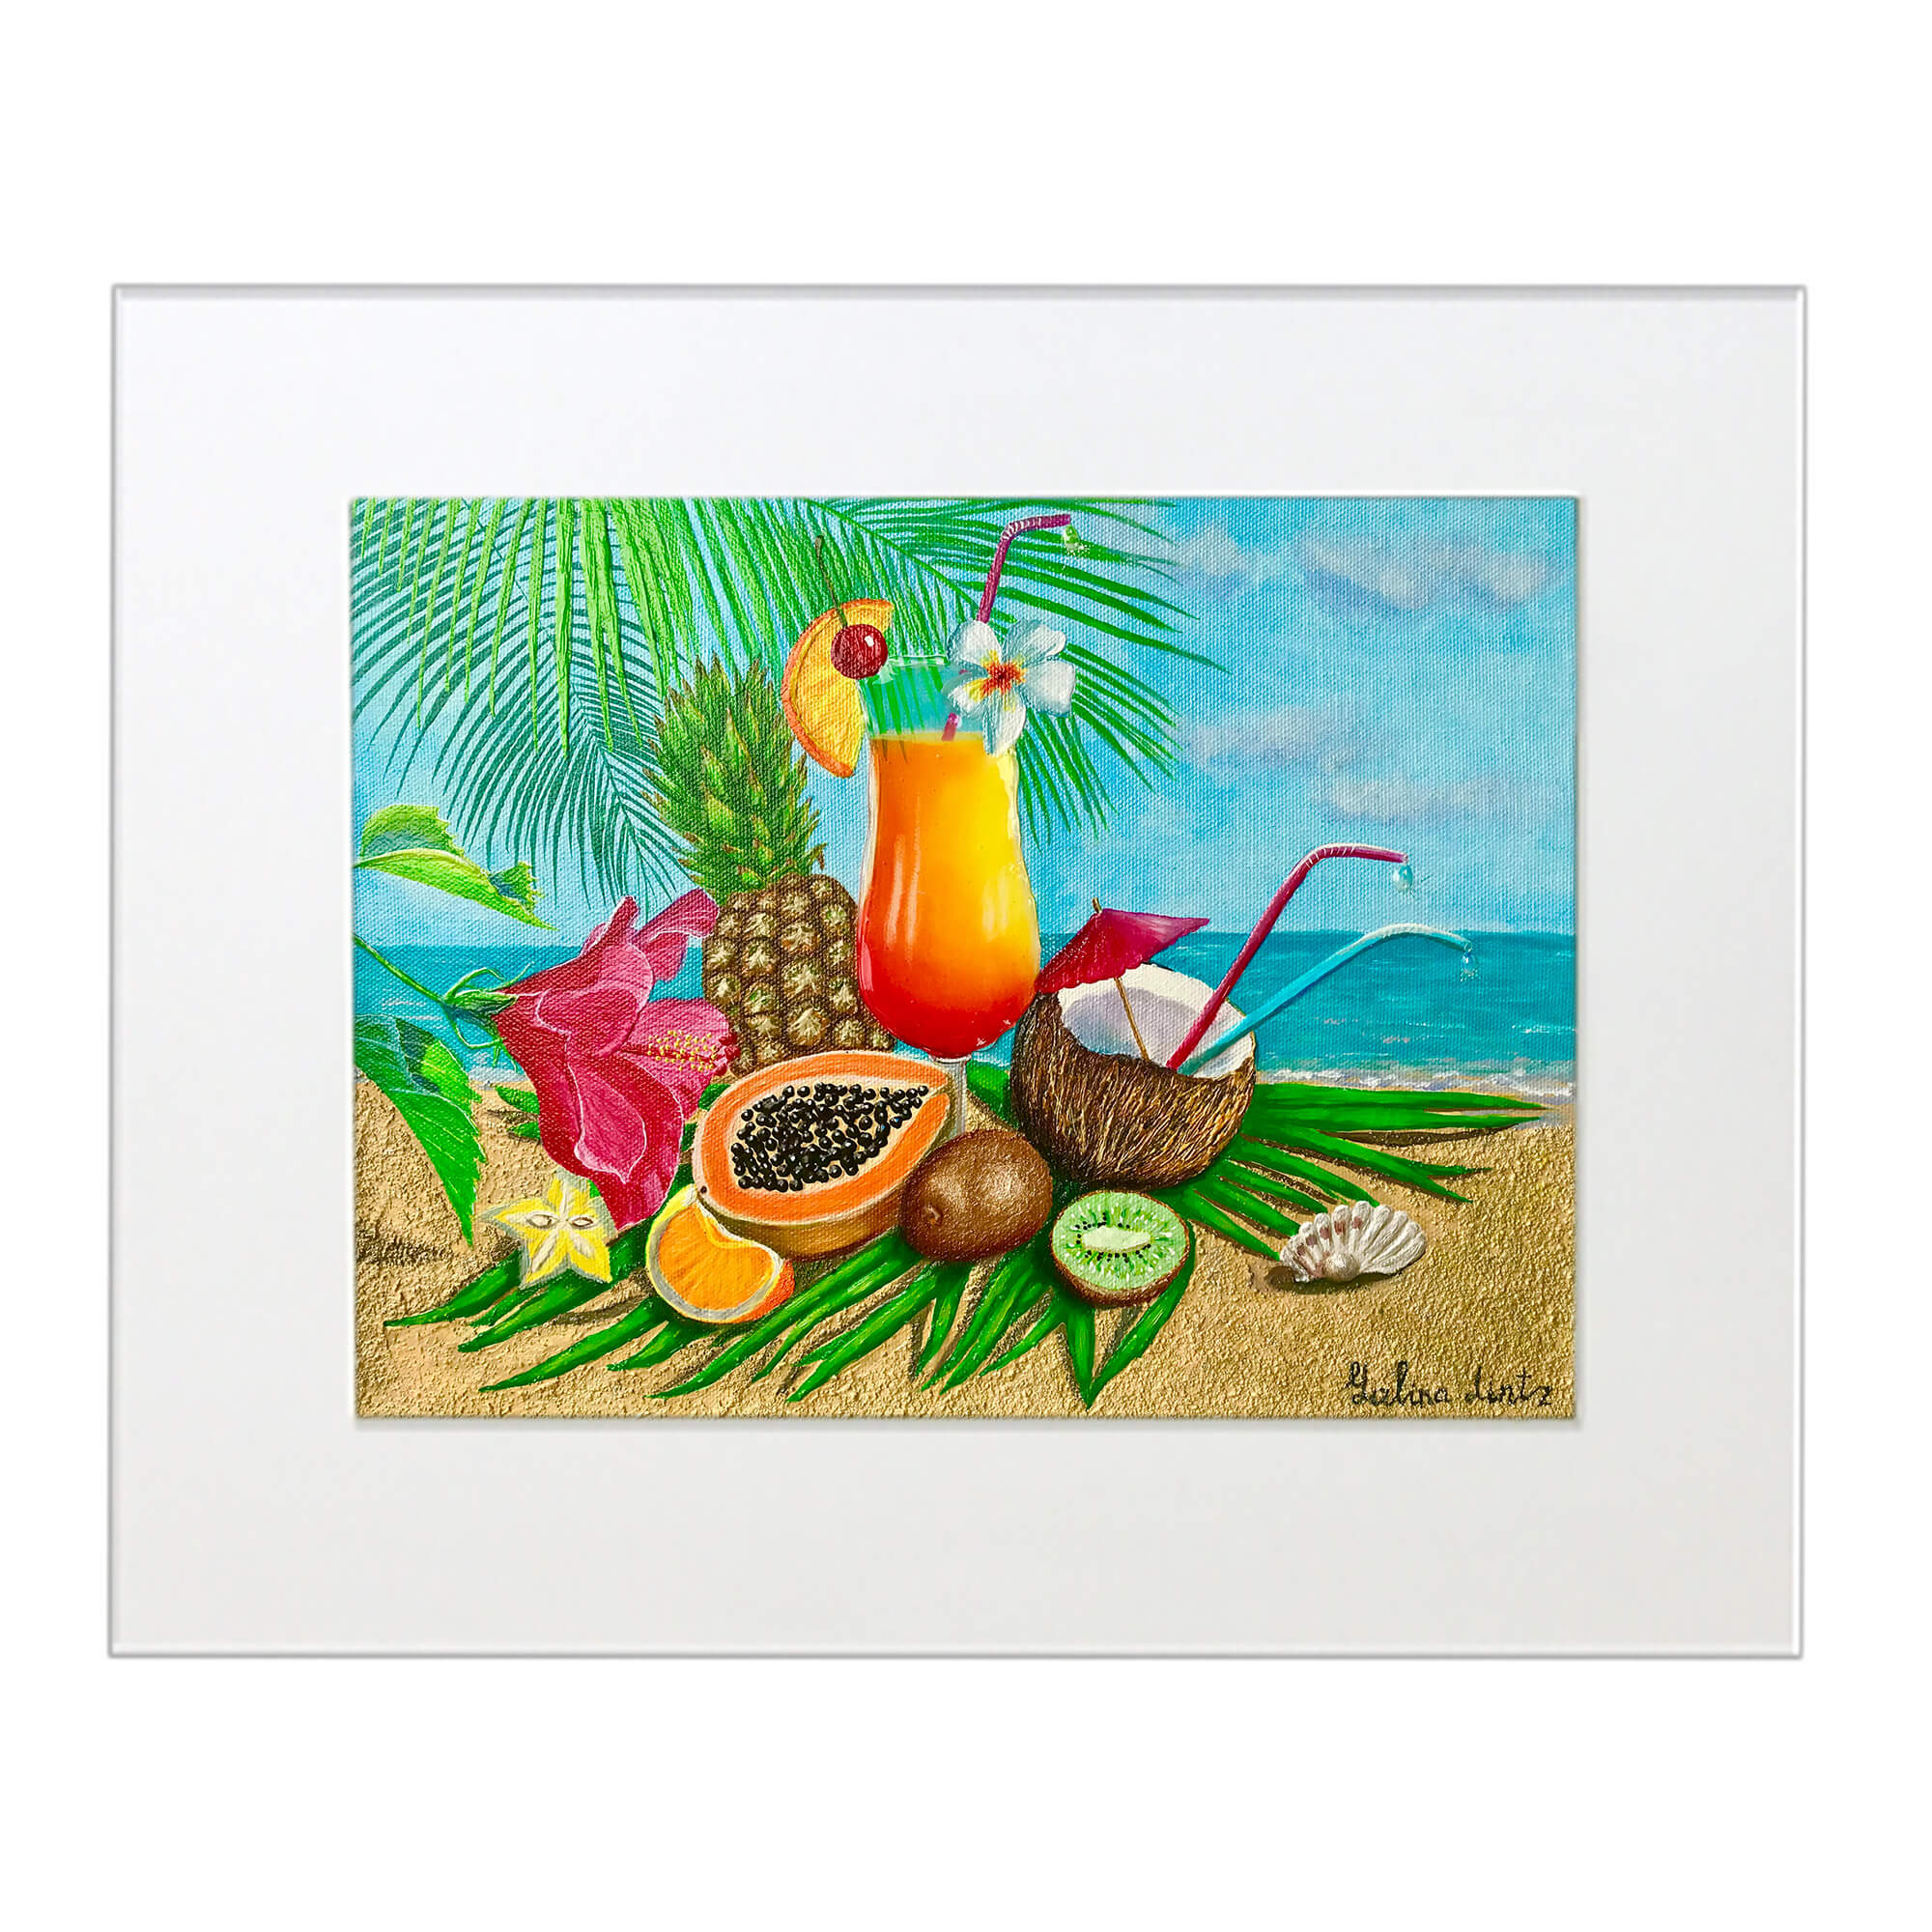 Matted art print featuring fruits by hawaii artist Galina Lintz